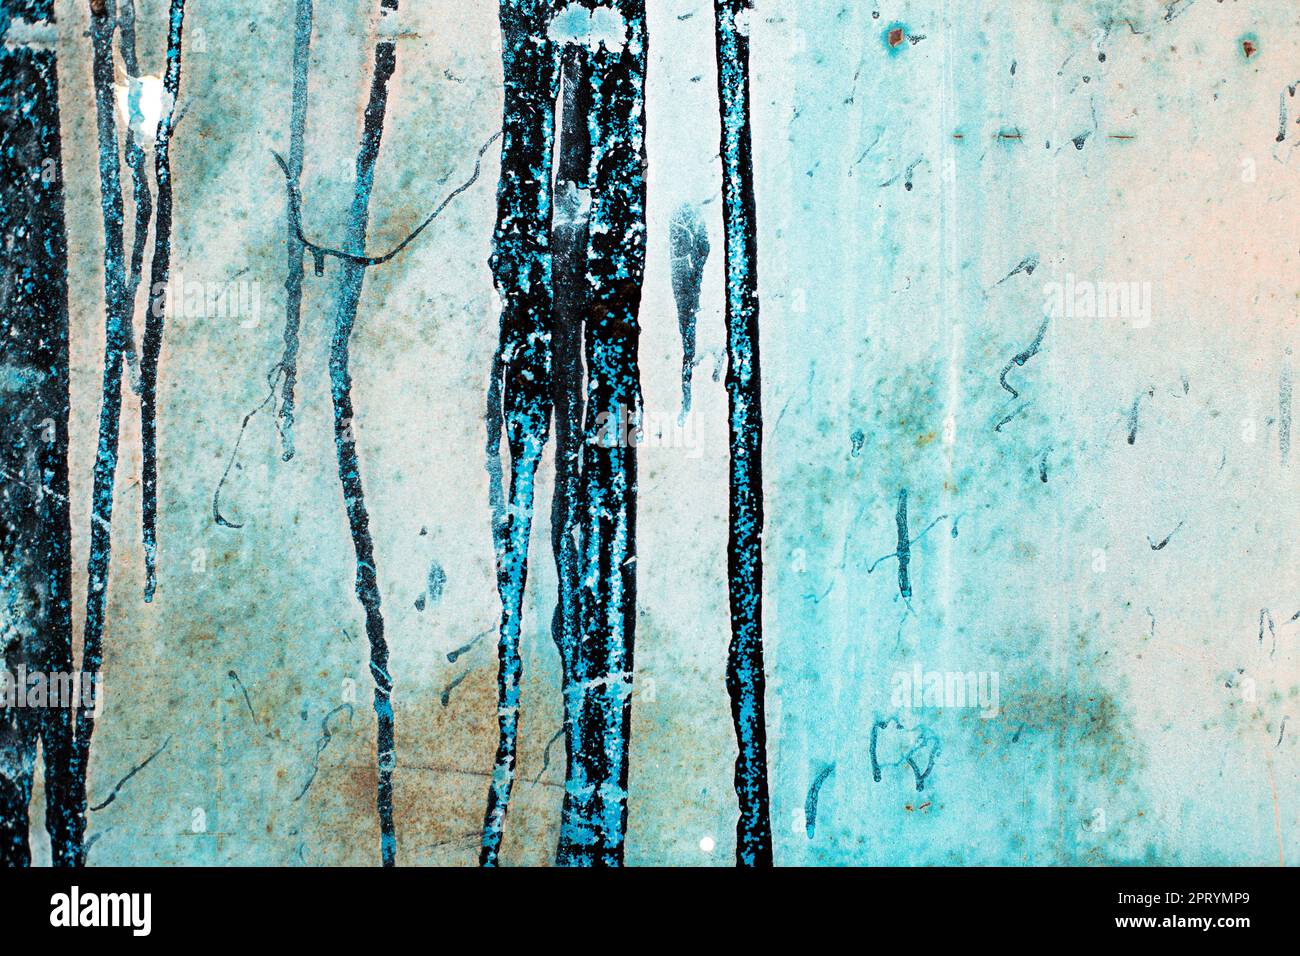 Ancienne tôle rouillée bleue enduite de goudron noir. surface métallique rouillée. Fissures, éraflures et taches de résine noire sur l'arrière-plan. Banque D'Images